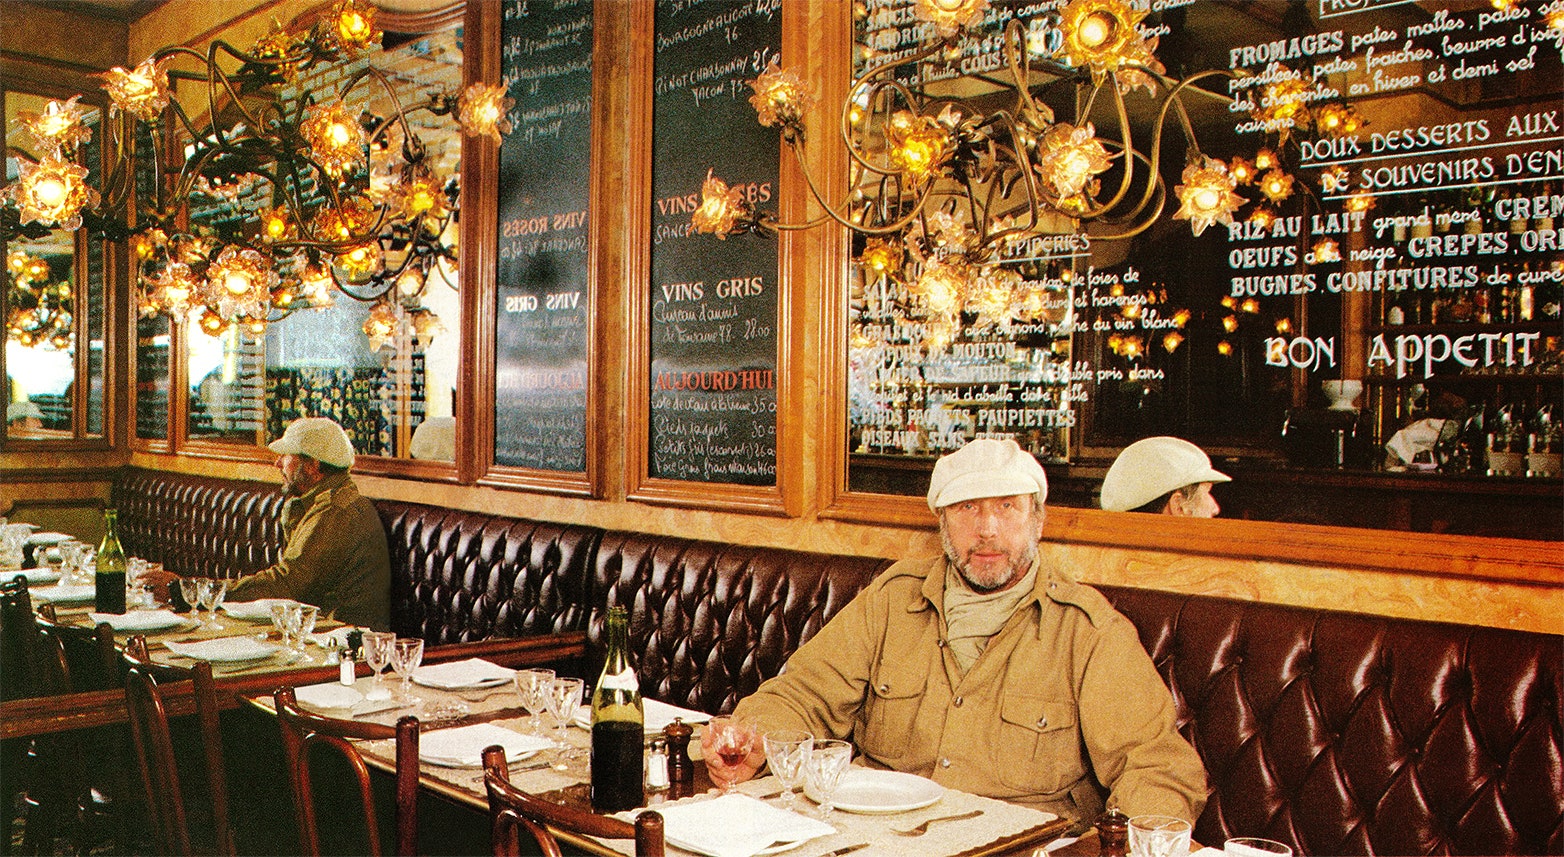 Le décorateur Slavik attablé au Petit Mâchon, restaurant de cuisine lyonnaise.